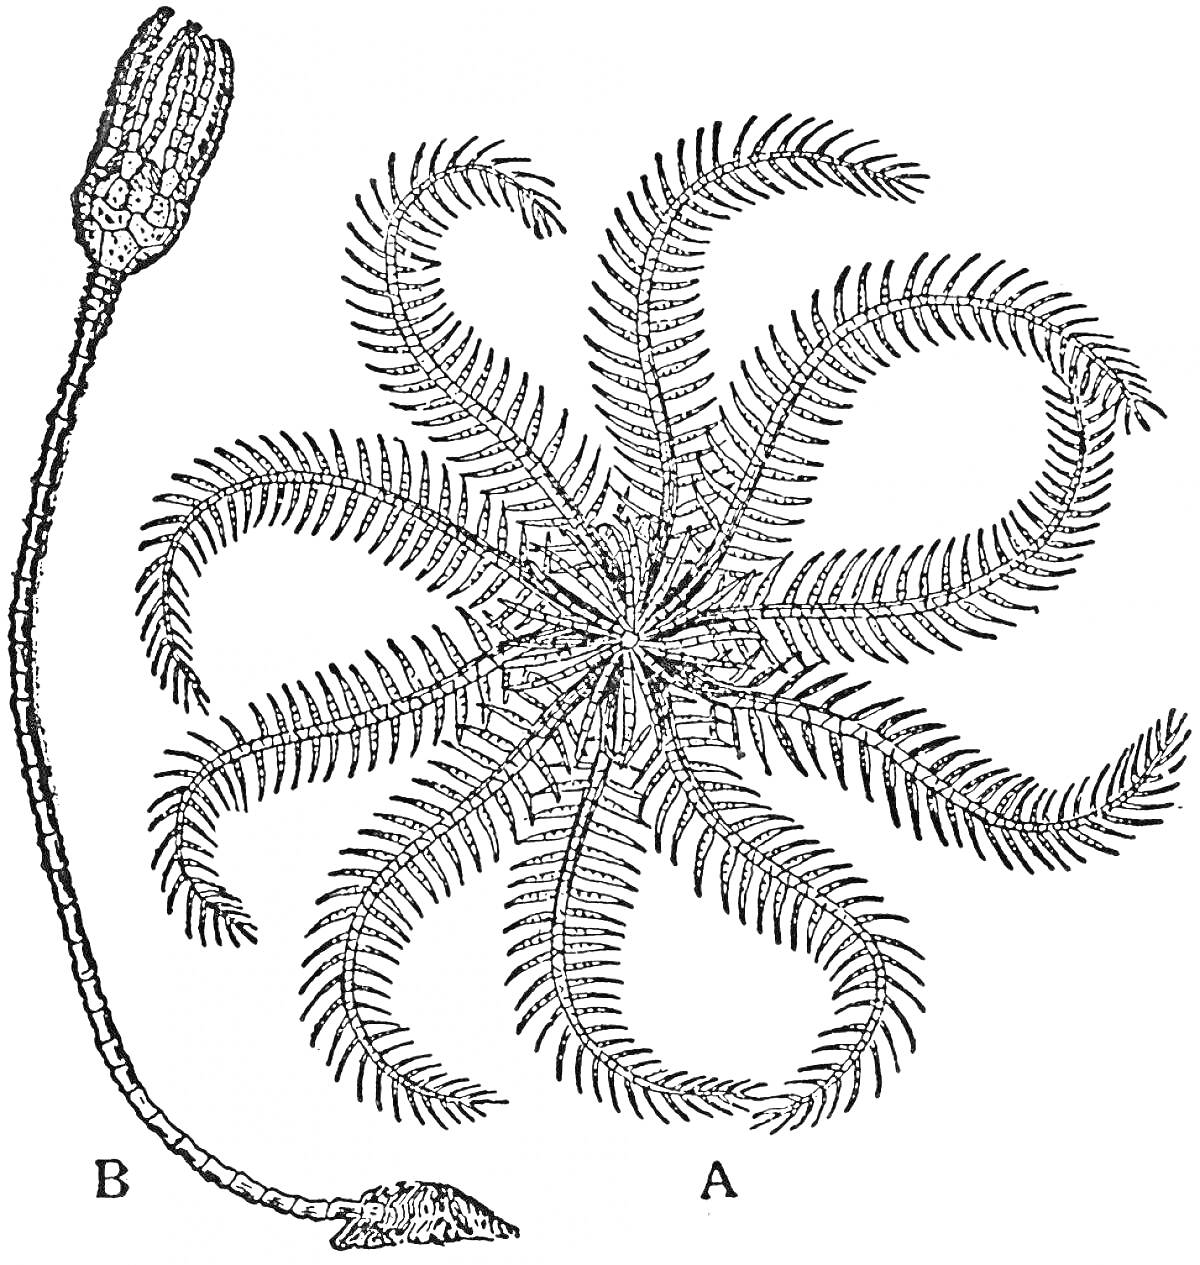 Раскраска Лилия морская с вытянутым стеблем и множеством ветвящихся лучей